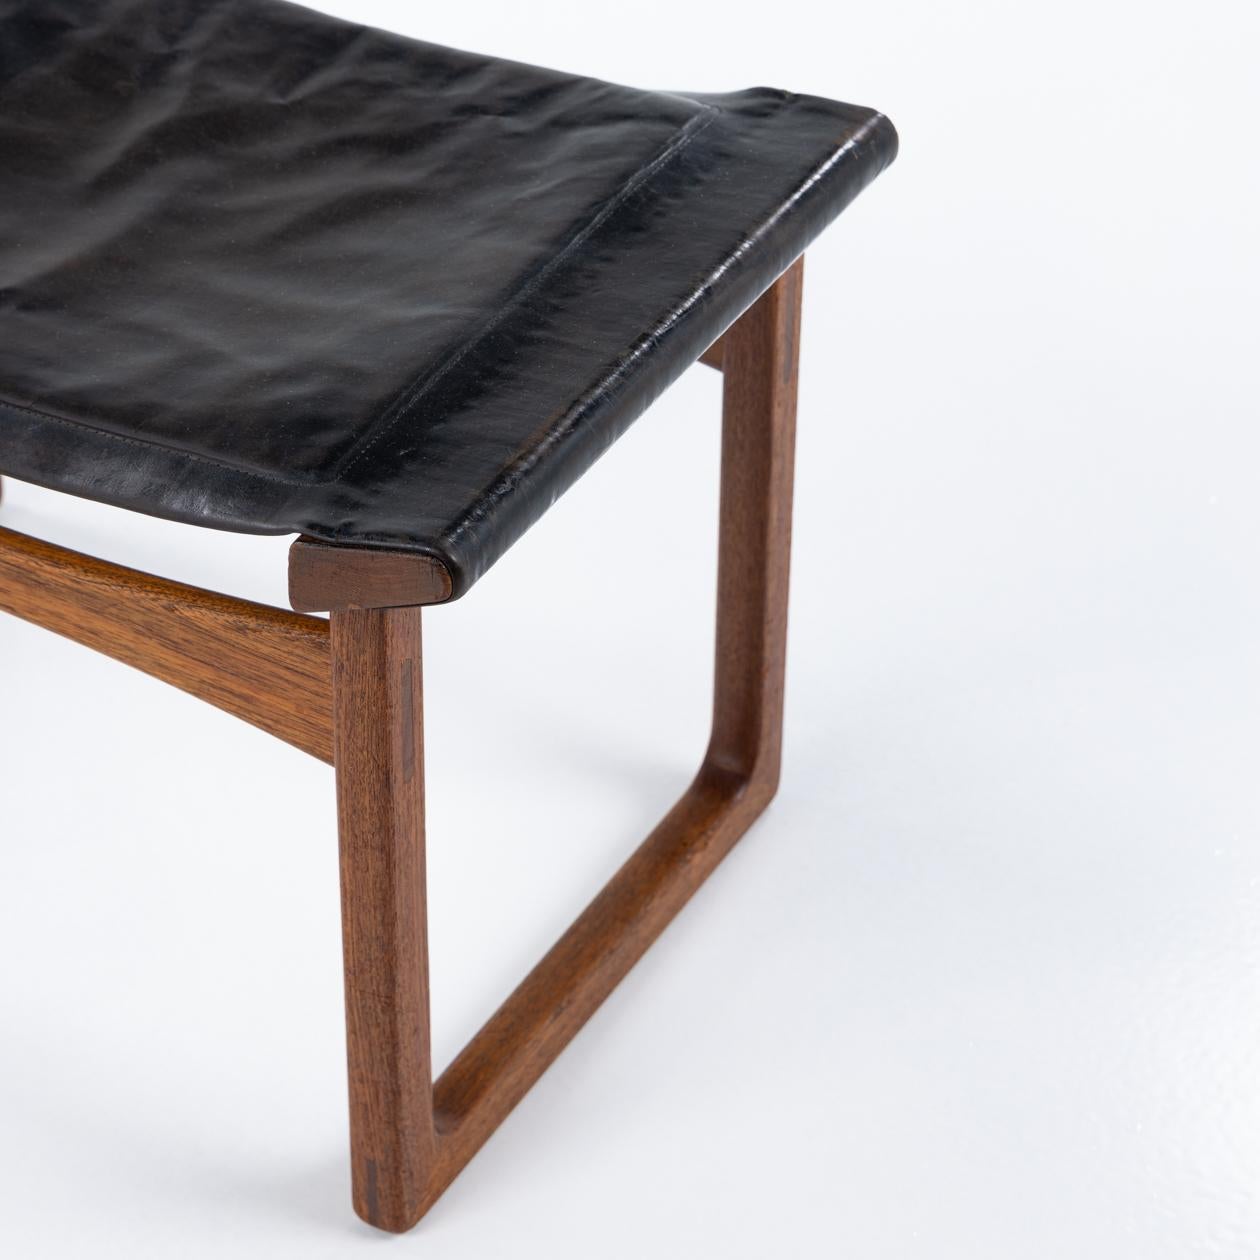 'China stool' in teak and black patinated leather. Designed in 1951. Ejner Larsen & Aksel Bender Madsen / Ludvig Pontoppidan.